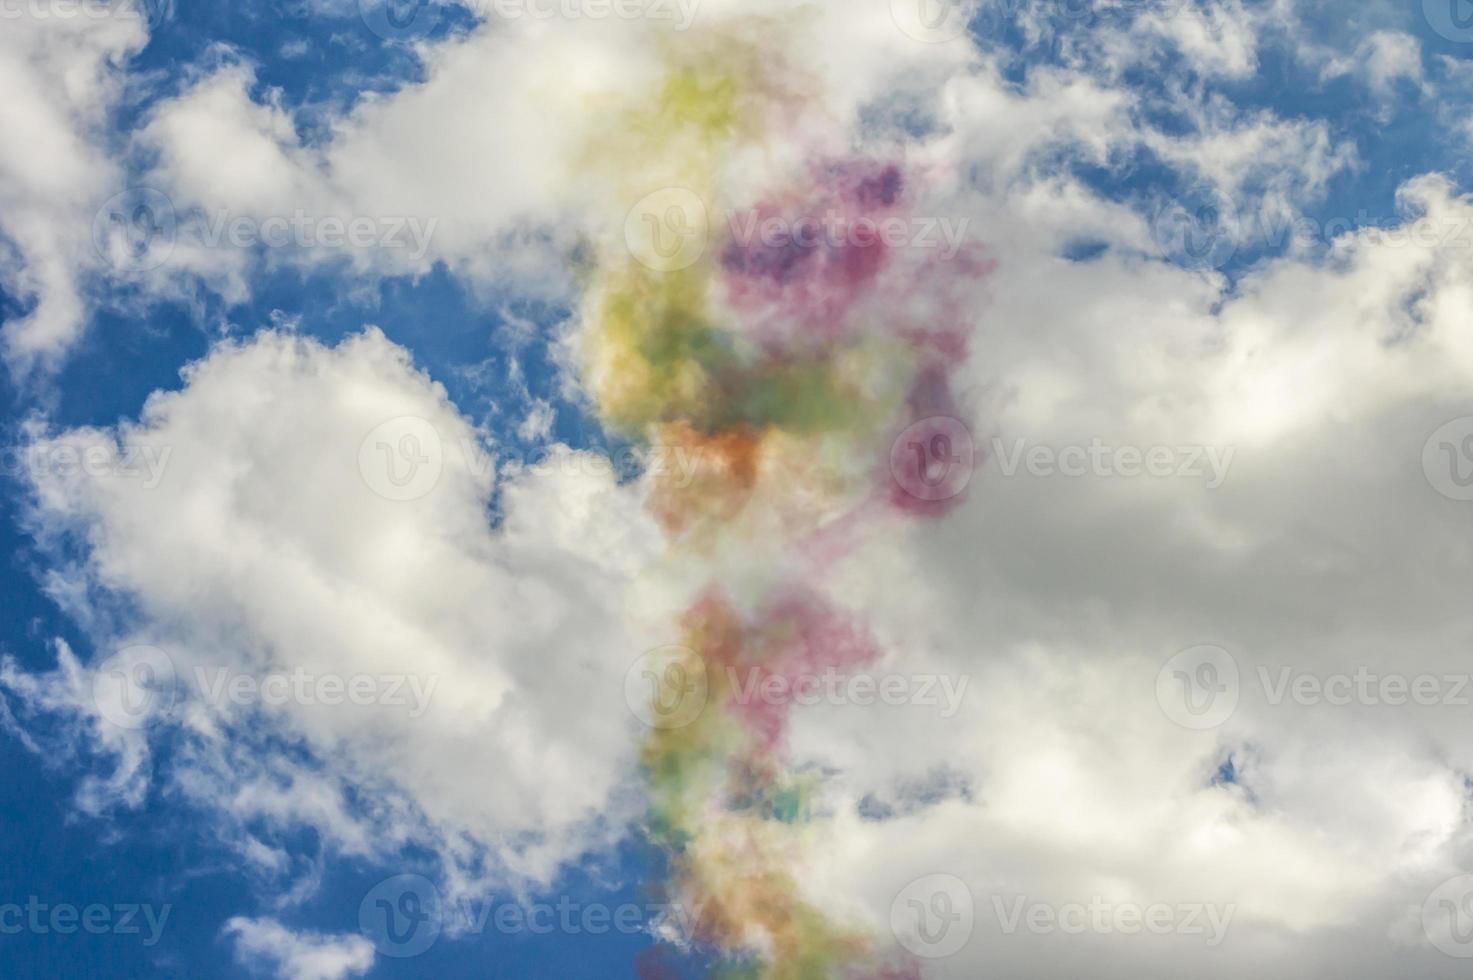 humo colorido en el cielo azul con nubes foto